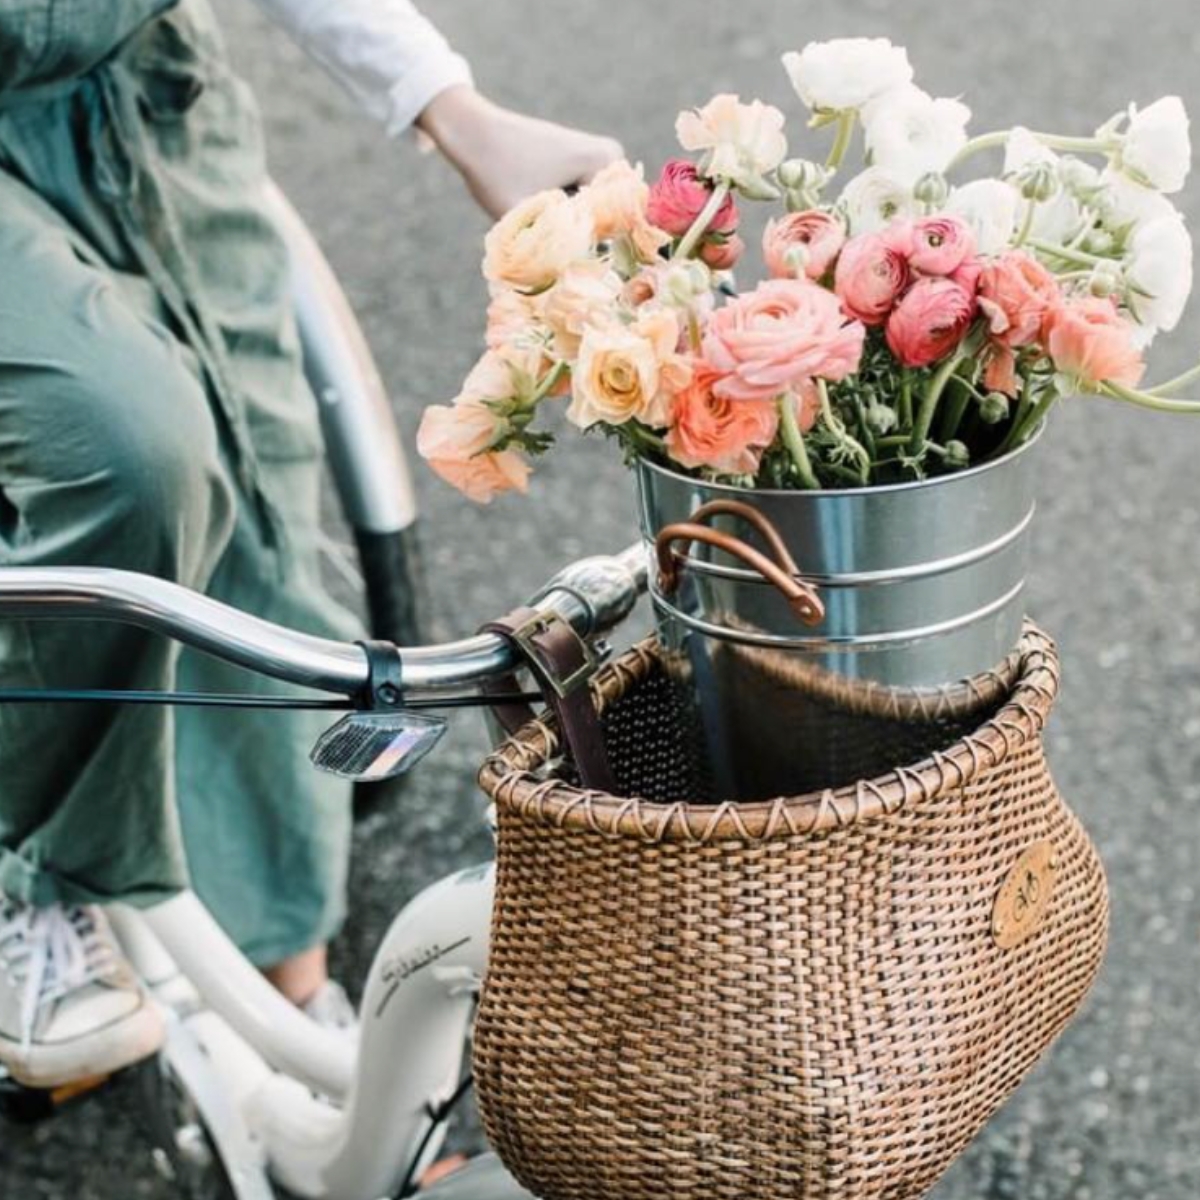 Flowers in a Nantucket wicker bike basket